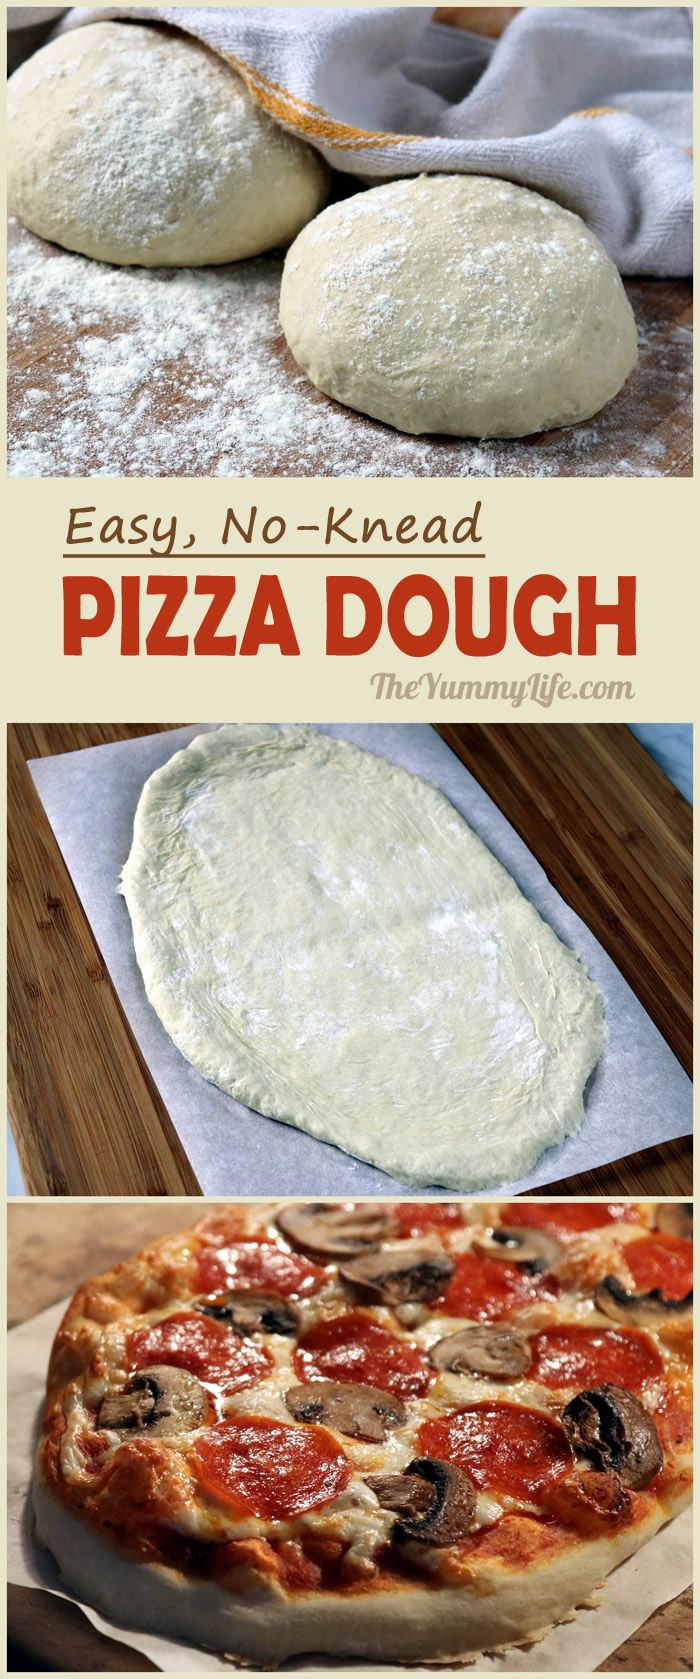 Authentic Italian Pizza Dough Recipes
 No Knead Pizza Dough